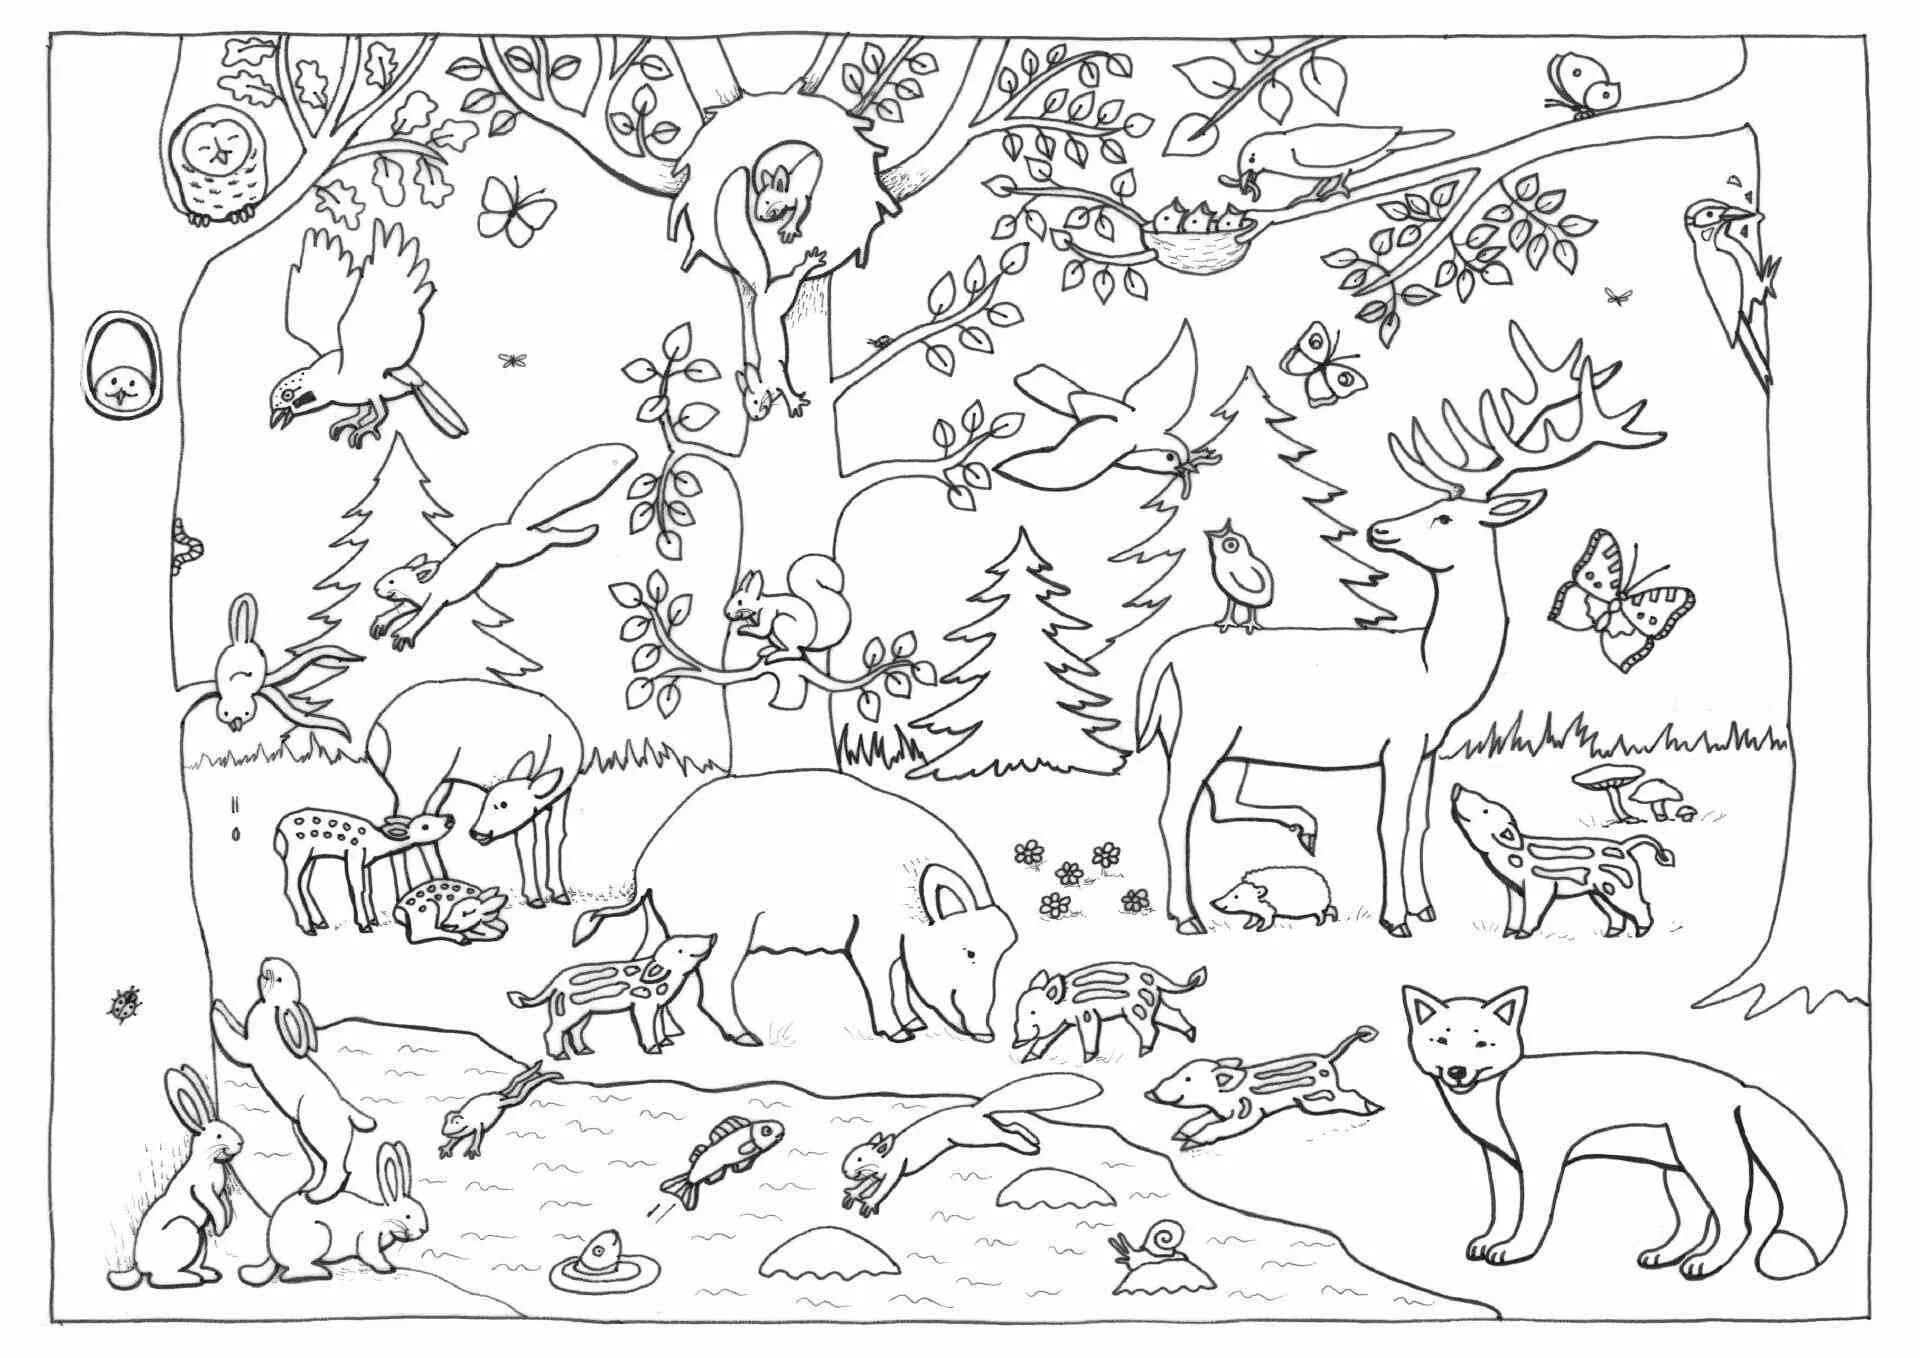 Узнай среди изображений печать. Раскраска Лесные животные. Лесные животные раскраска для детей. Лес раскраска для детей. Раскраска Дикие животные леса.